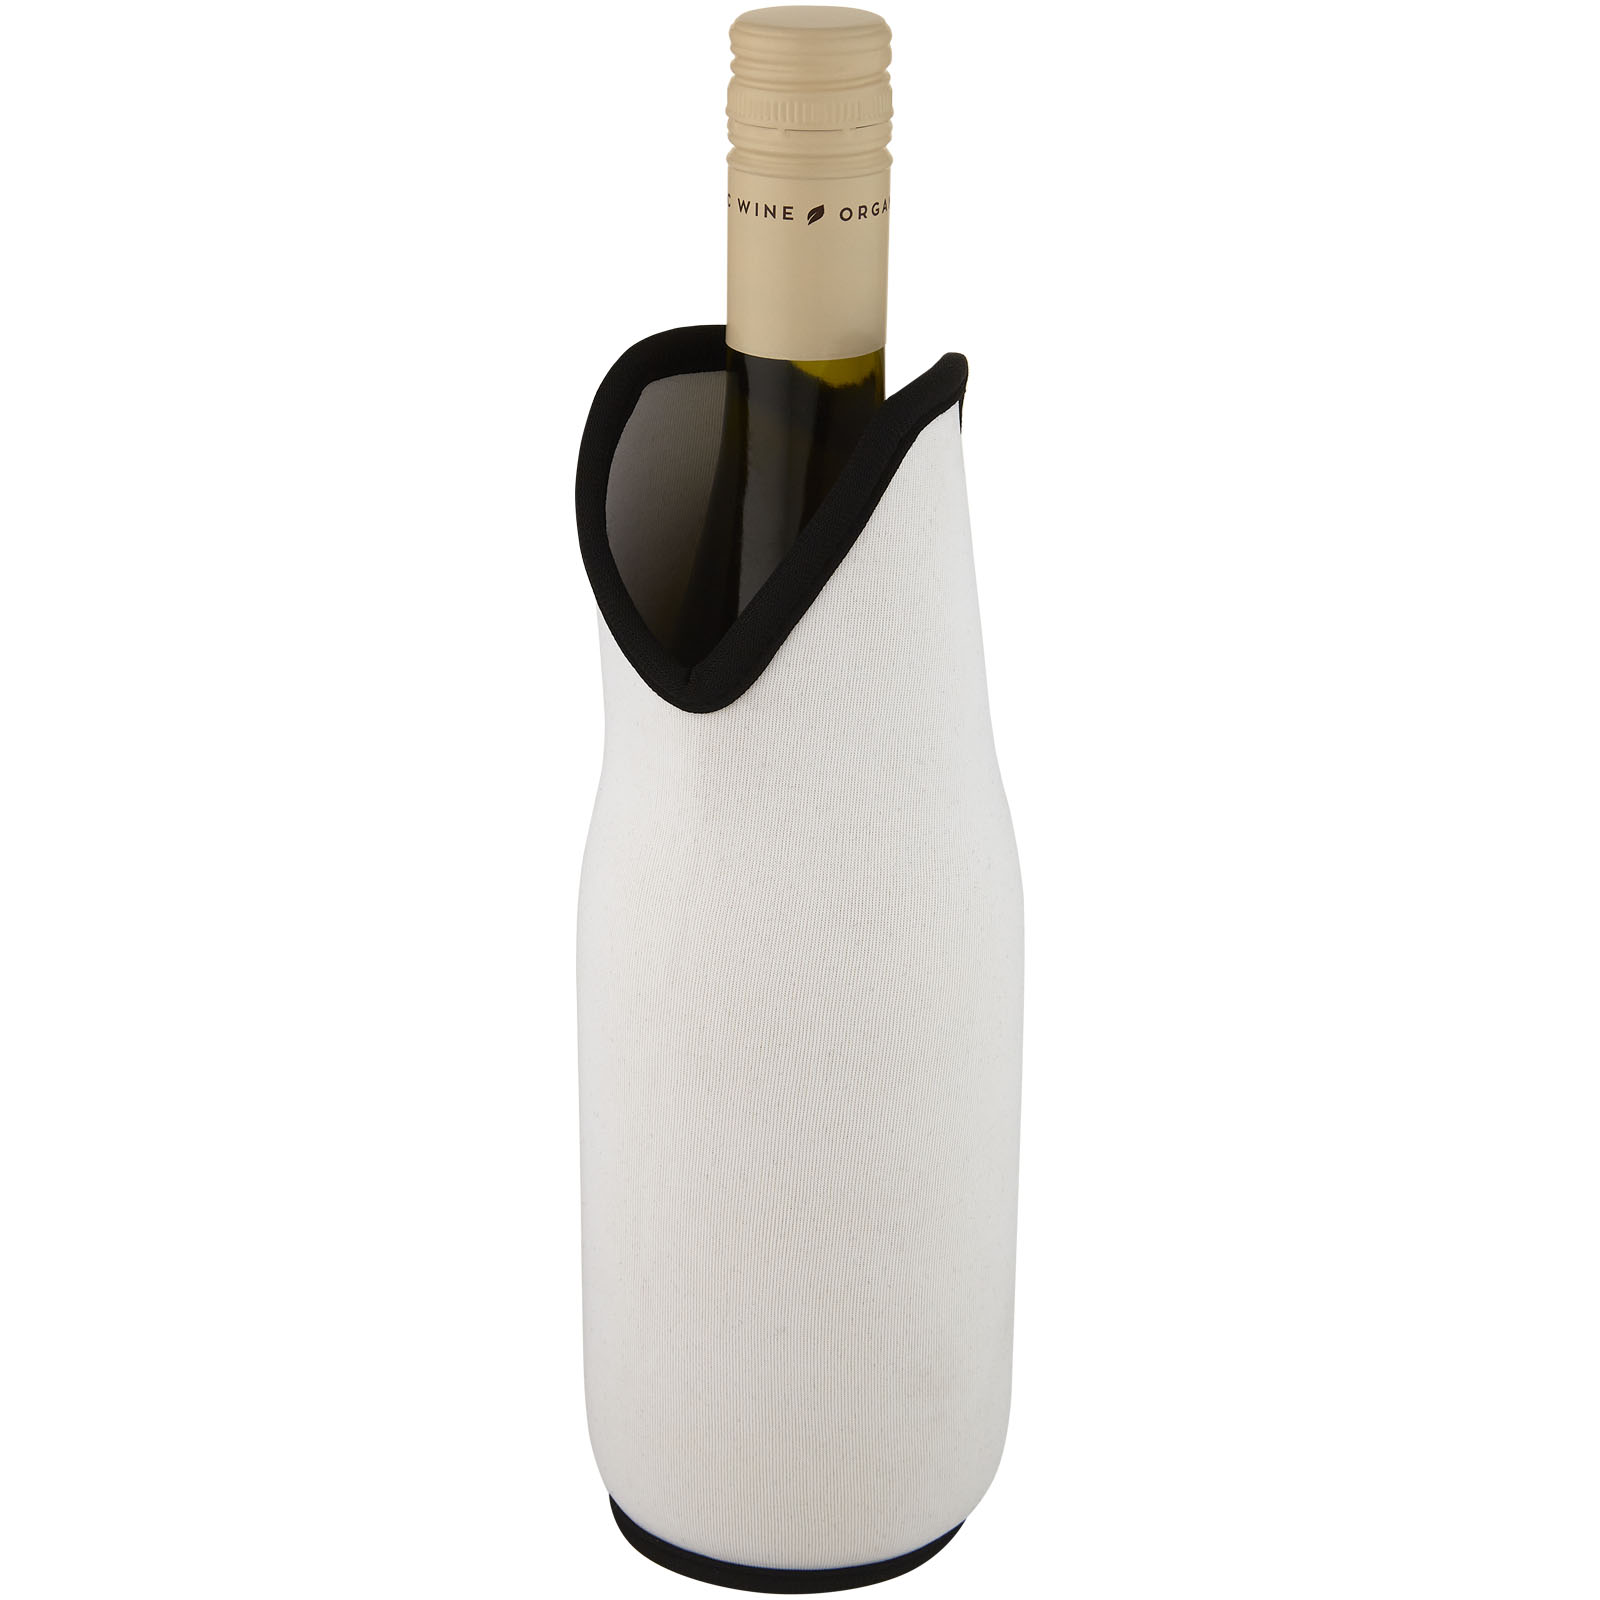 Accessoires pour le vin - Manchon Noun en néoprène recyclé pour bouteille de vin